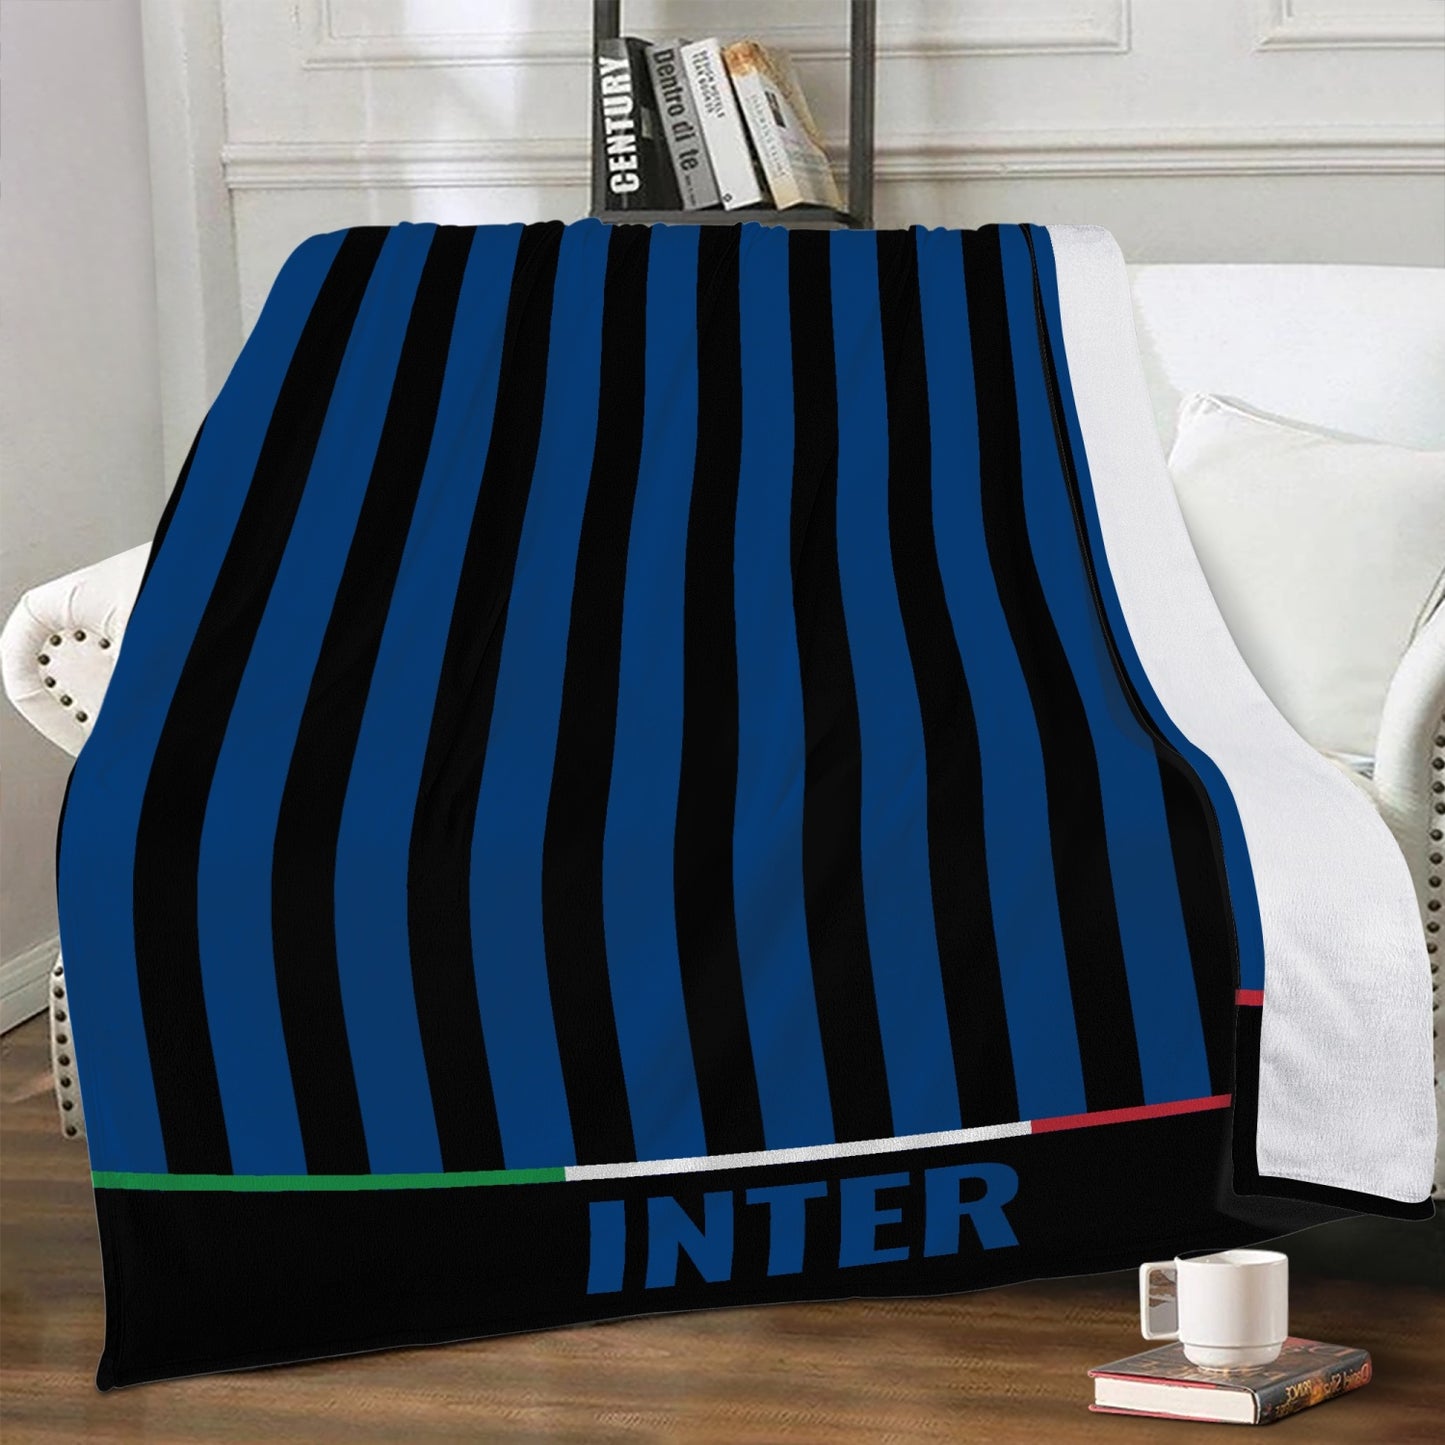 Inter Fleece Blanket